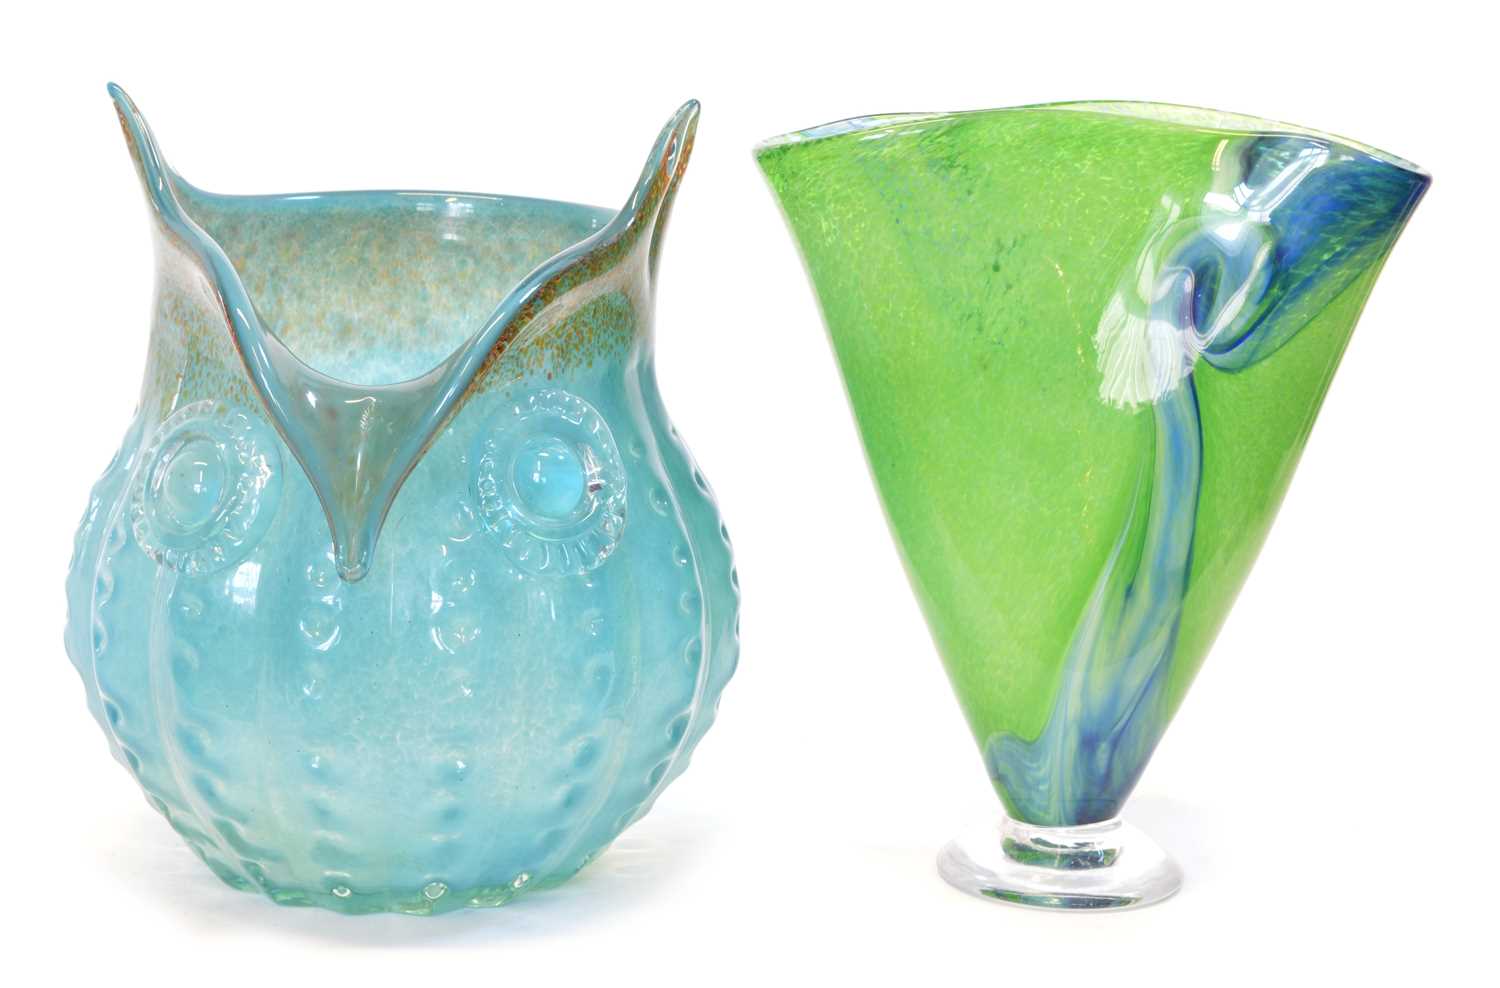 Two Art Glass Vases